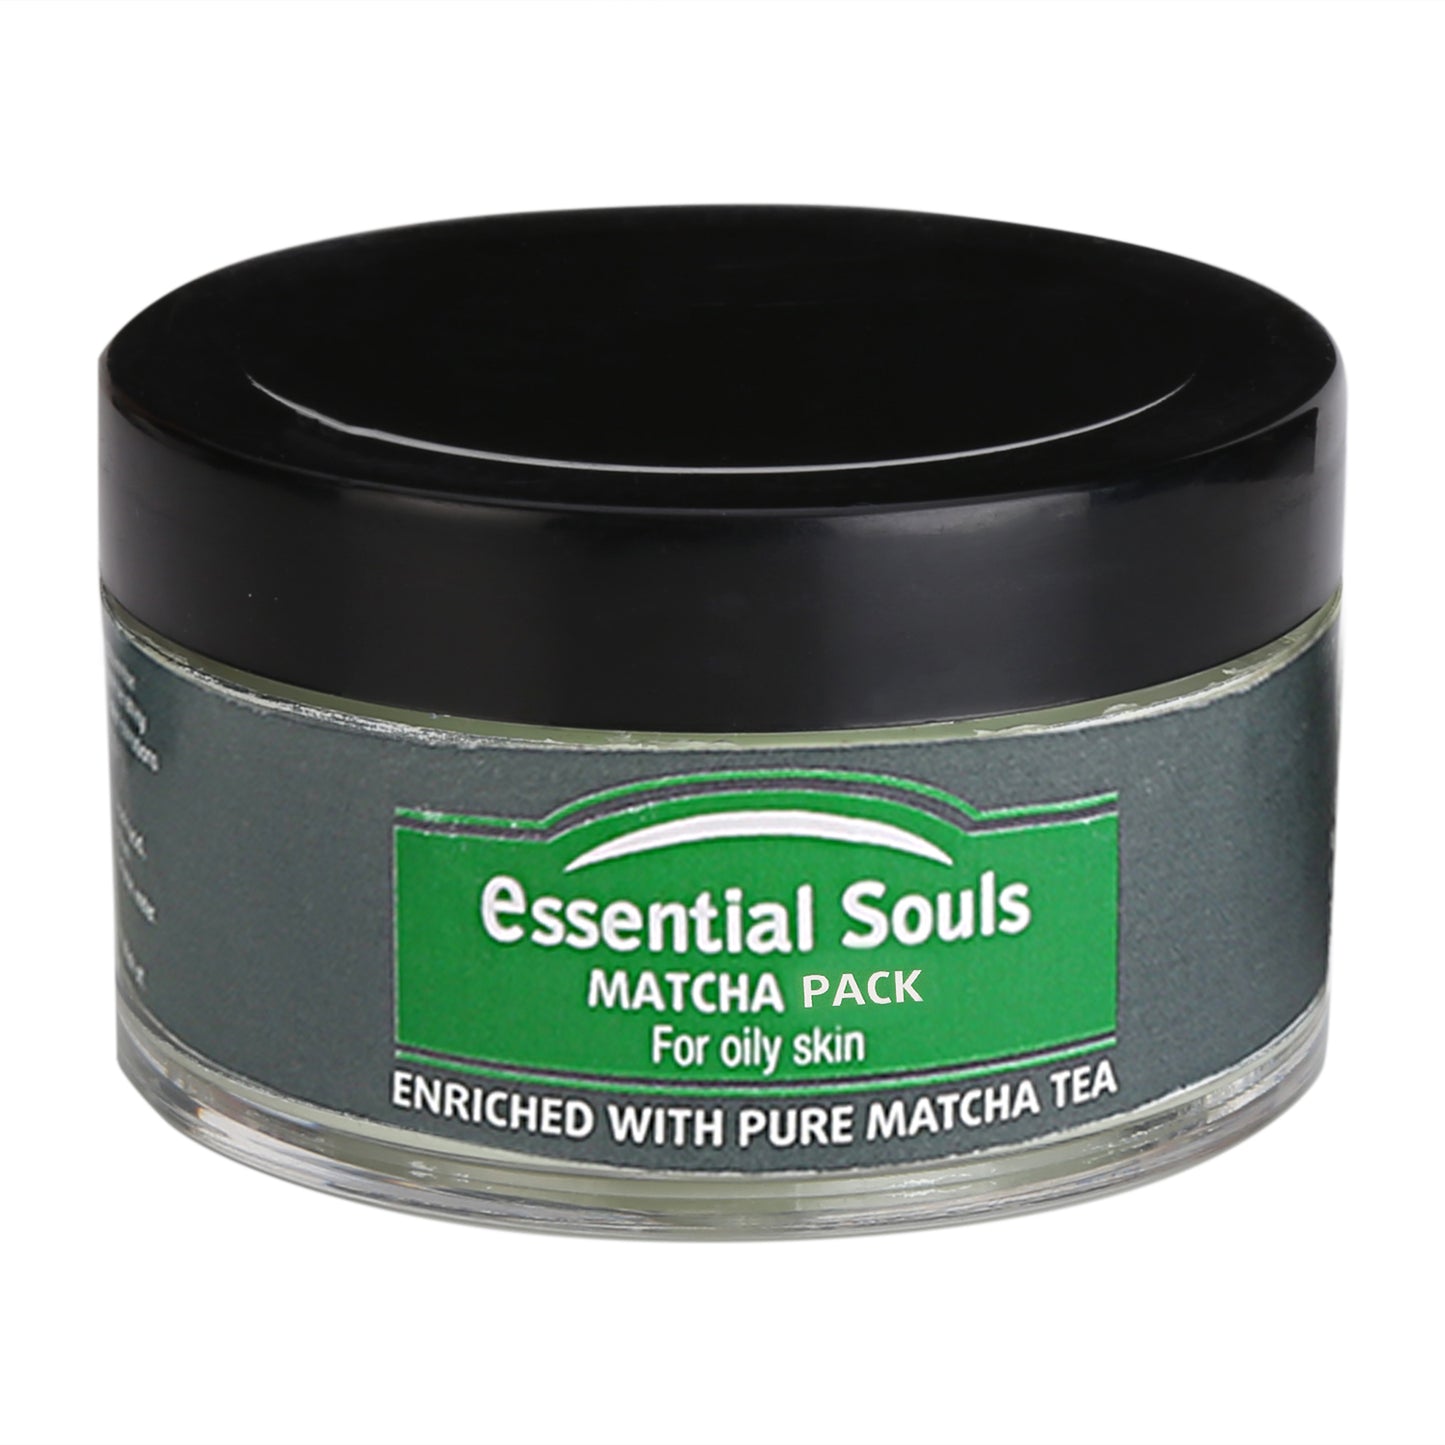 Essential Souls Matcha Pack - 50g